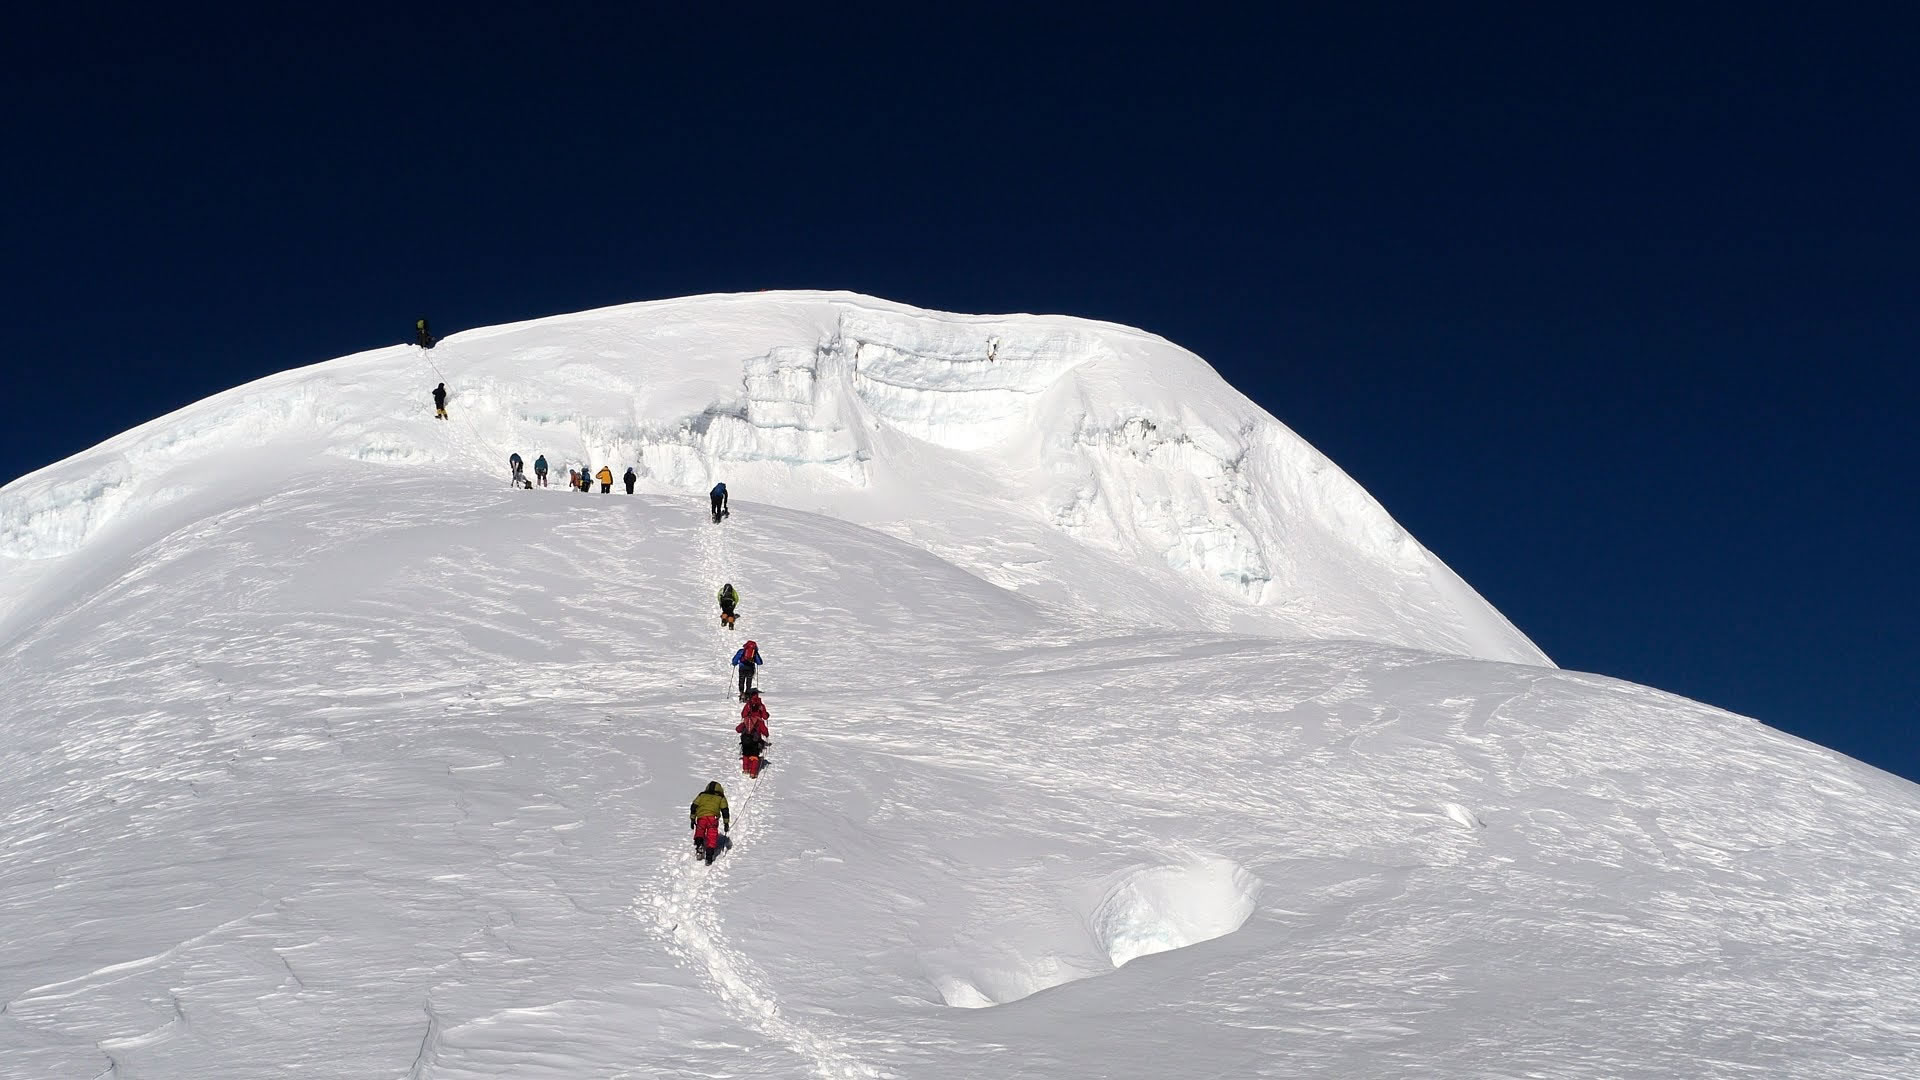 Mera Peak Climbing-16 Days